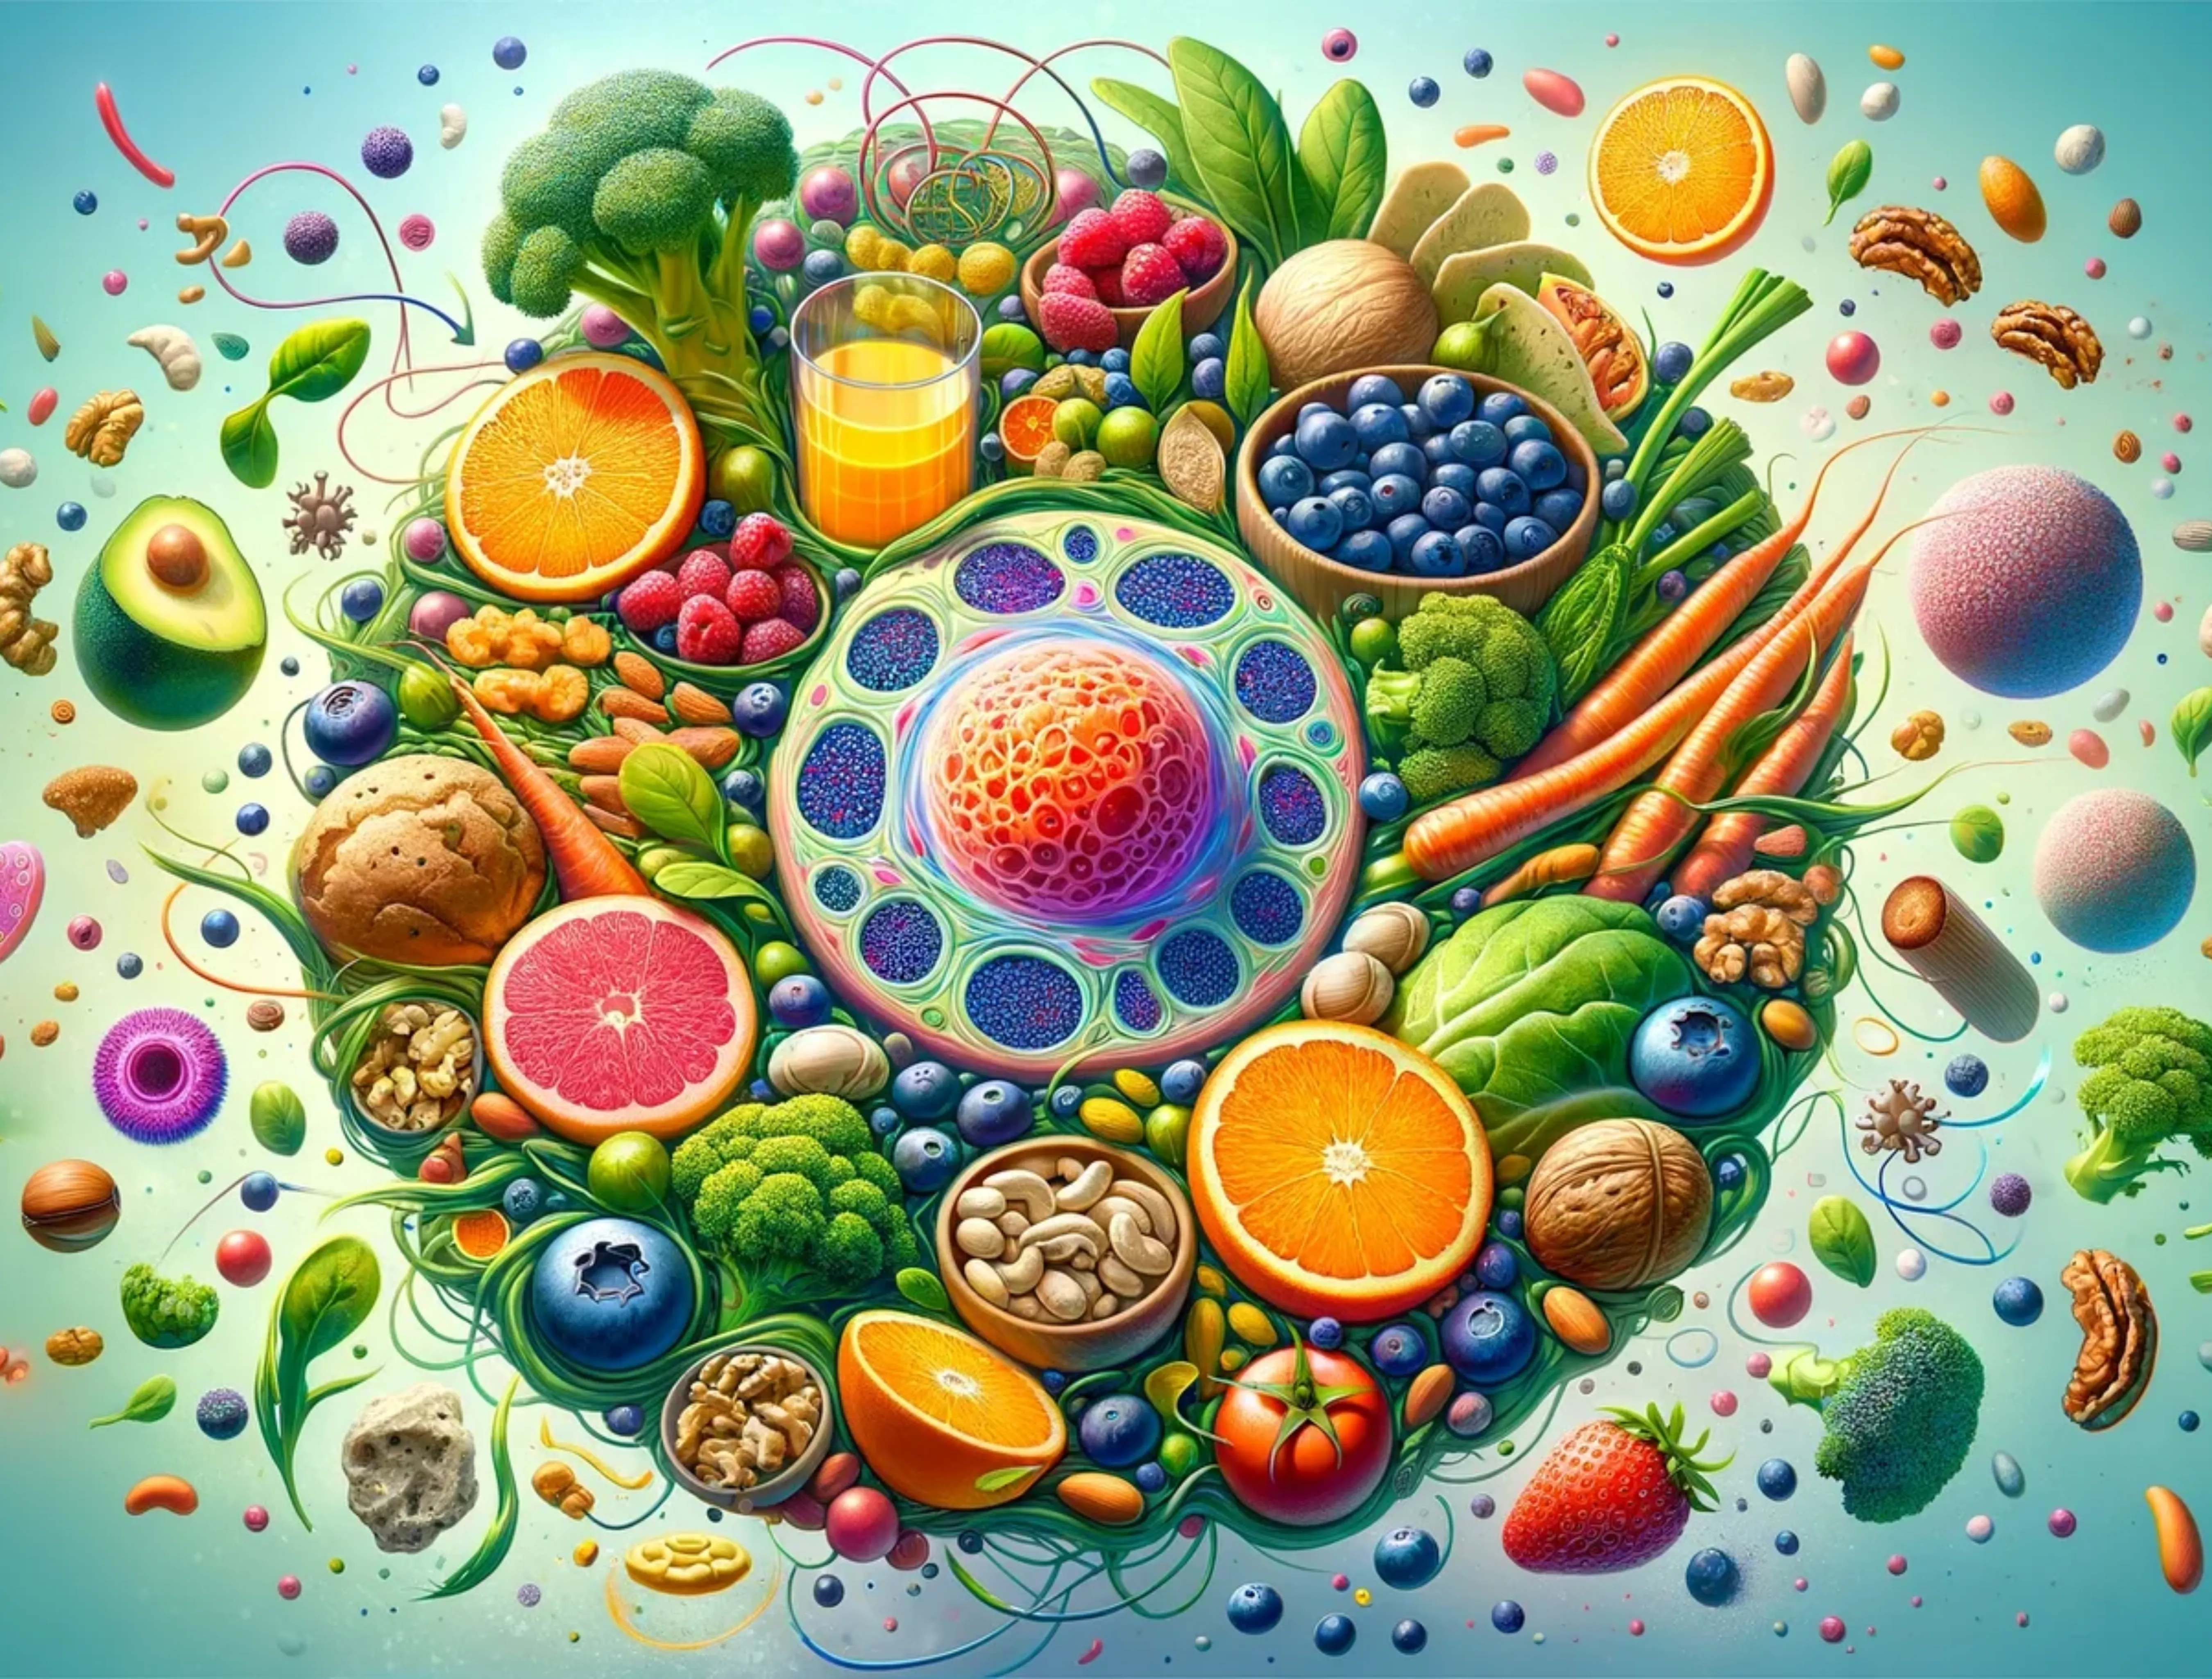 Image of foods that help repair cells